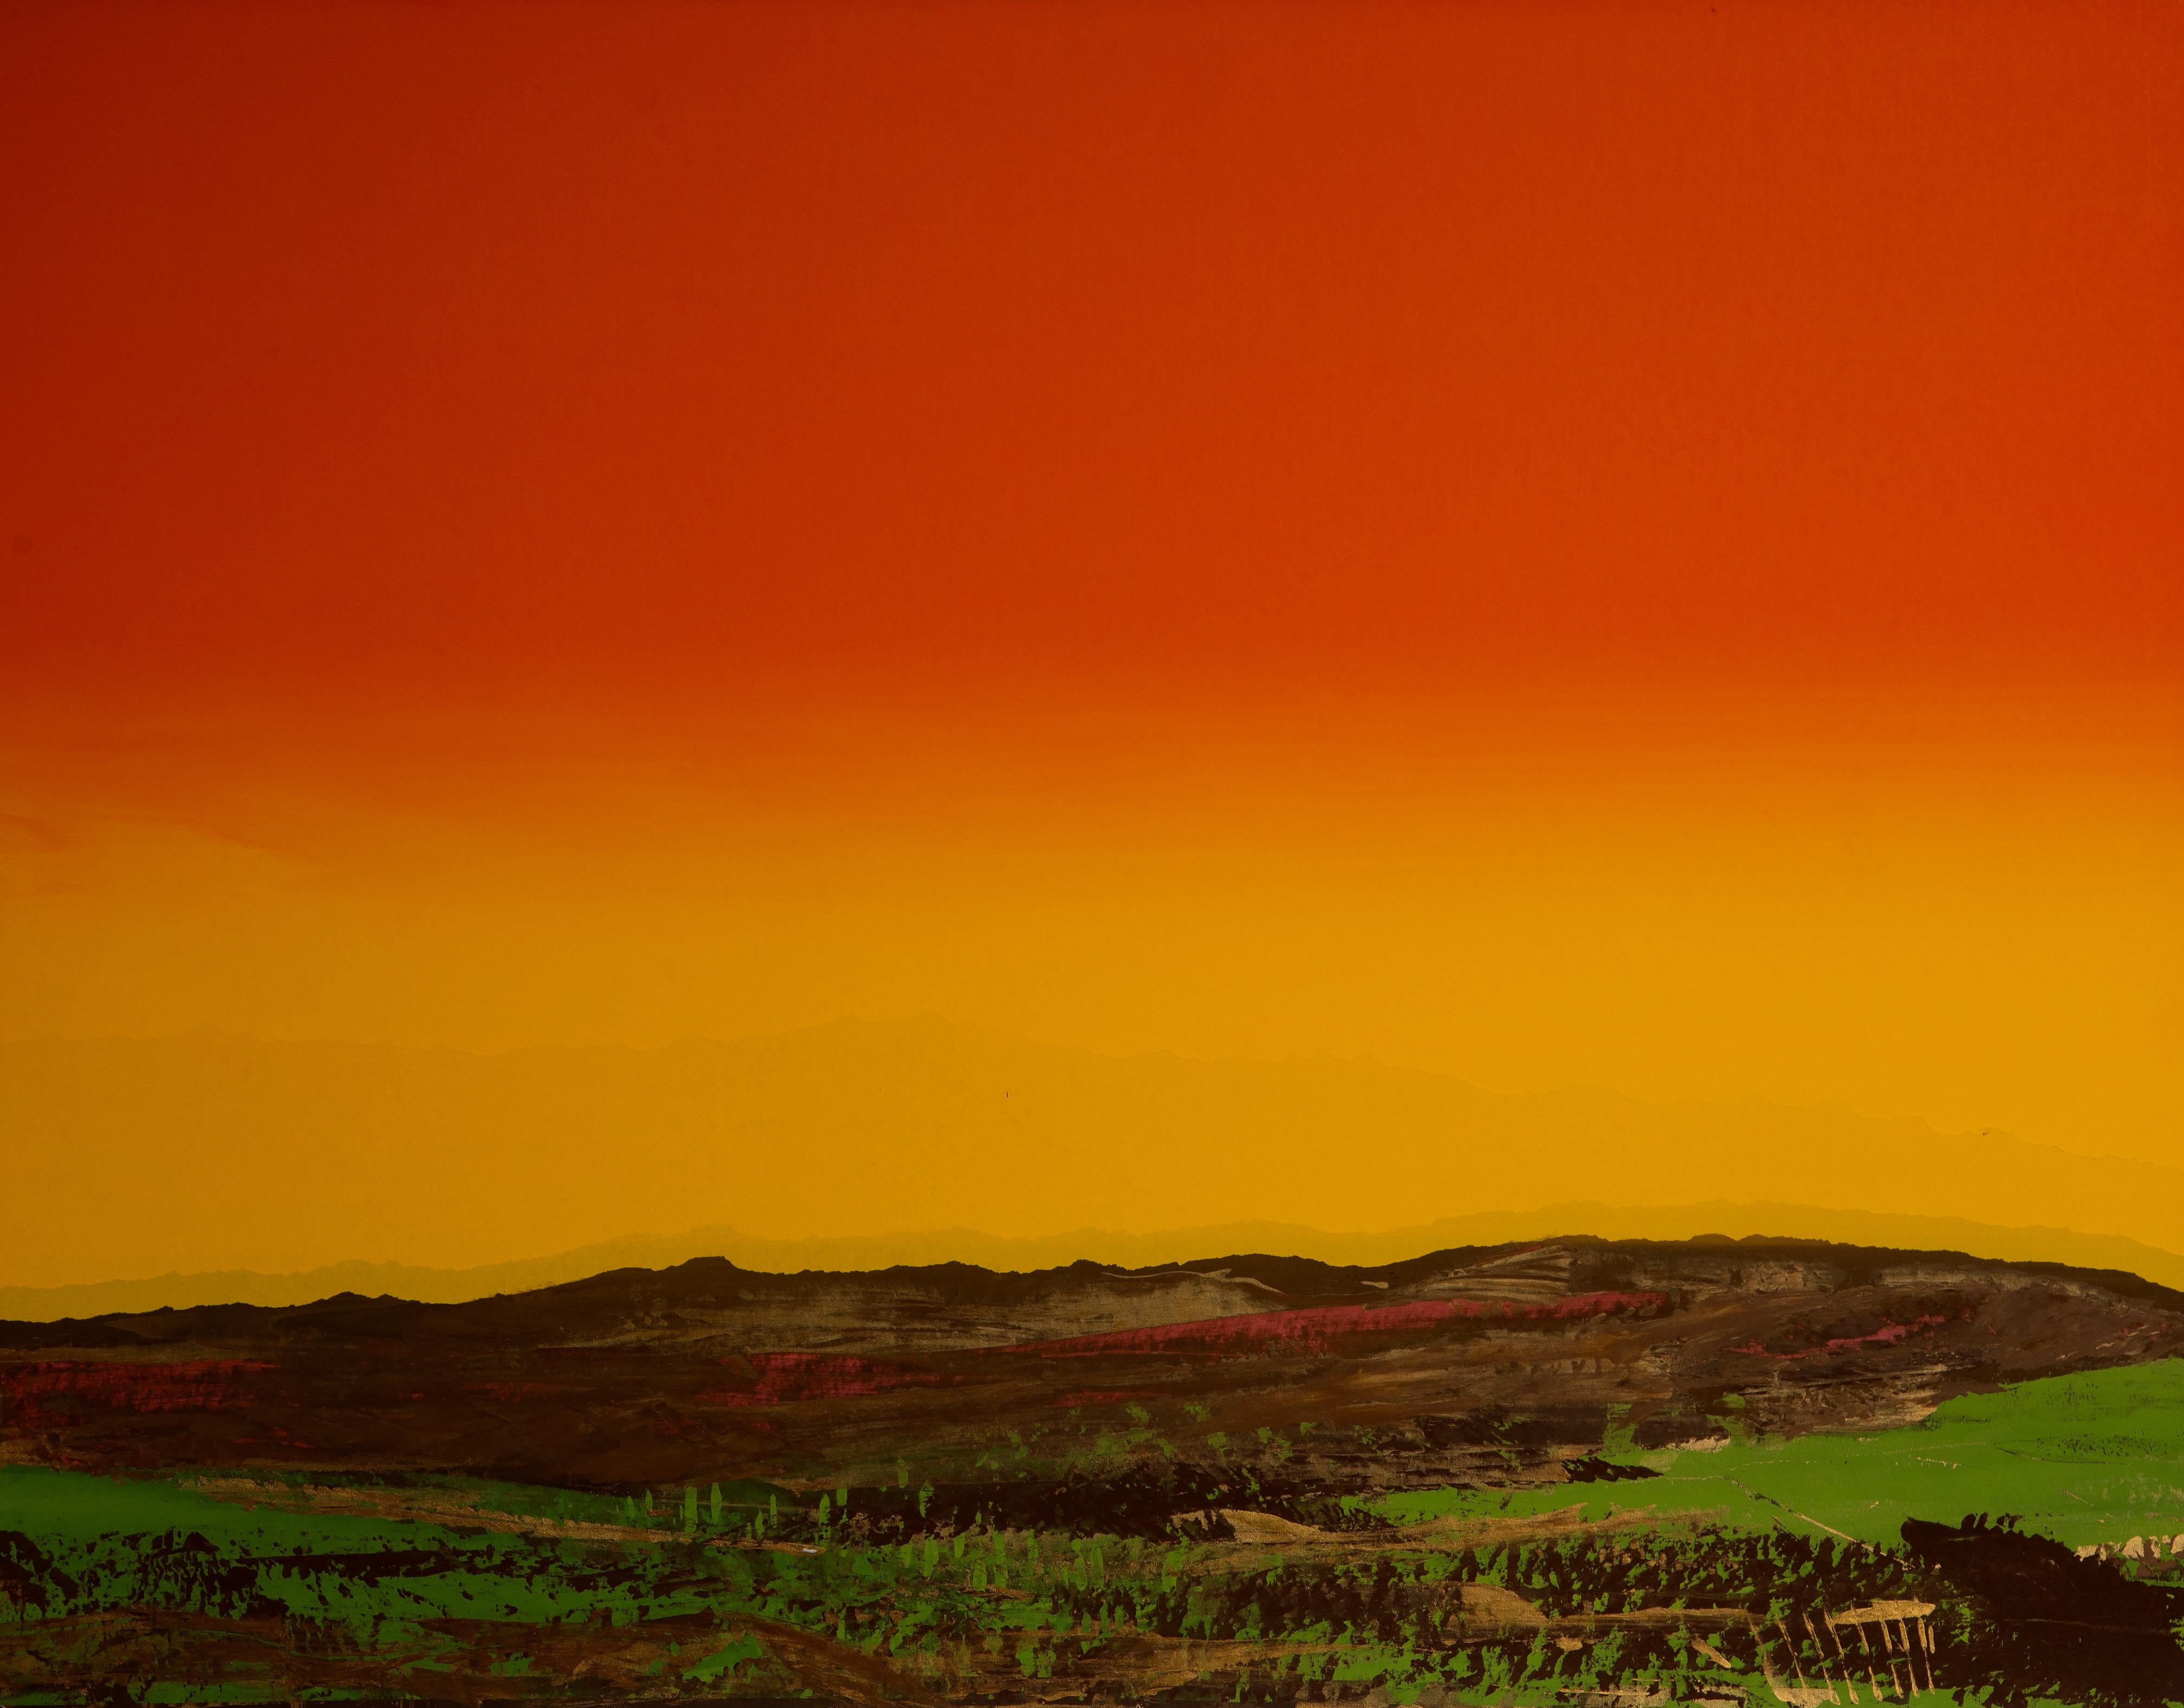 Wüste bei Sonnenuntergang
Joseph Grippi, Amerikaner (1924-2001)
Datum: ca. 1975
Siebdruck Monoprint, rechts unten mit Bleistift signiert
Größe: 30 x 38 Zoll (76,2 x 96,52 cm)